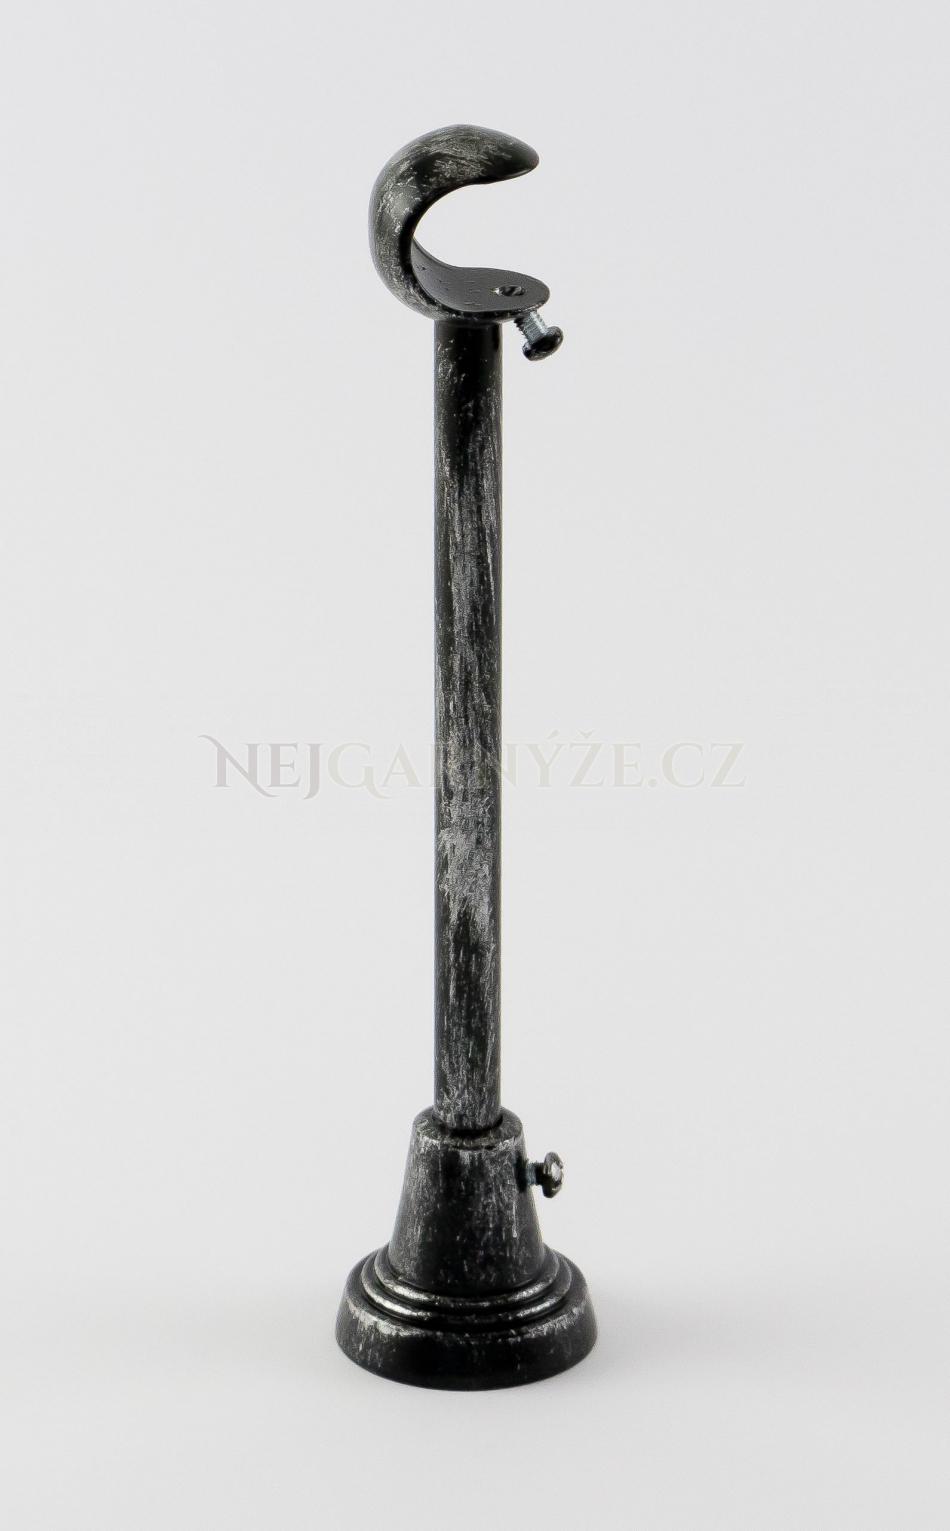 Patinovaný kovový držák jednotyčový Ø 25 mm Černo-stříbrná